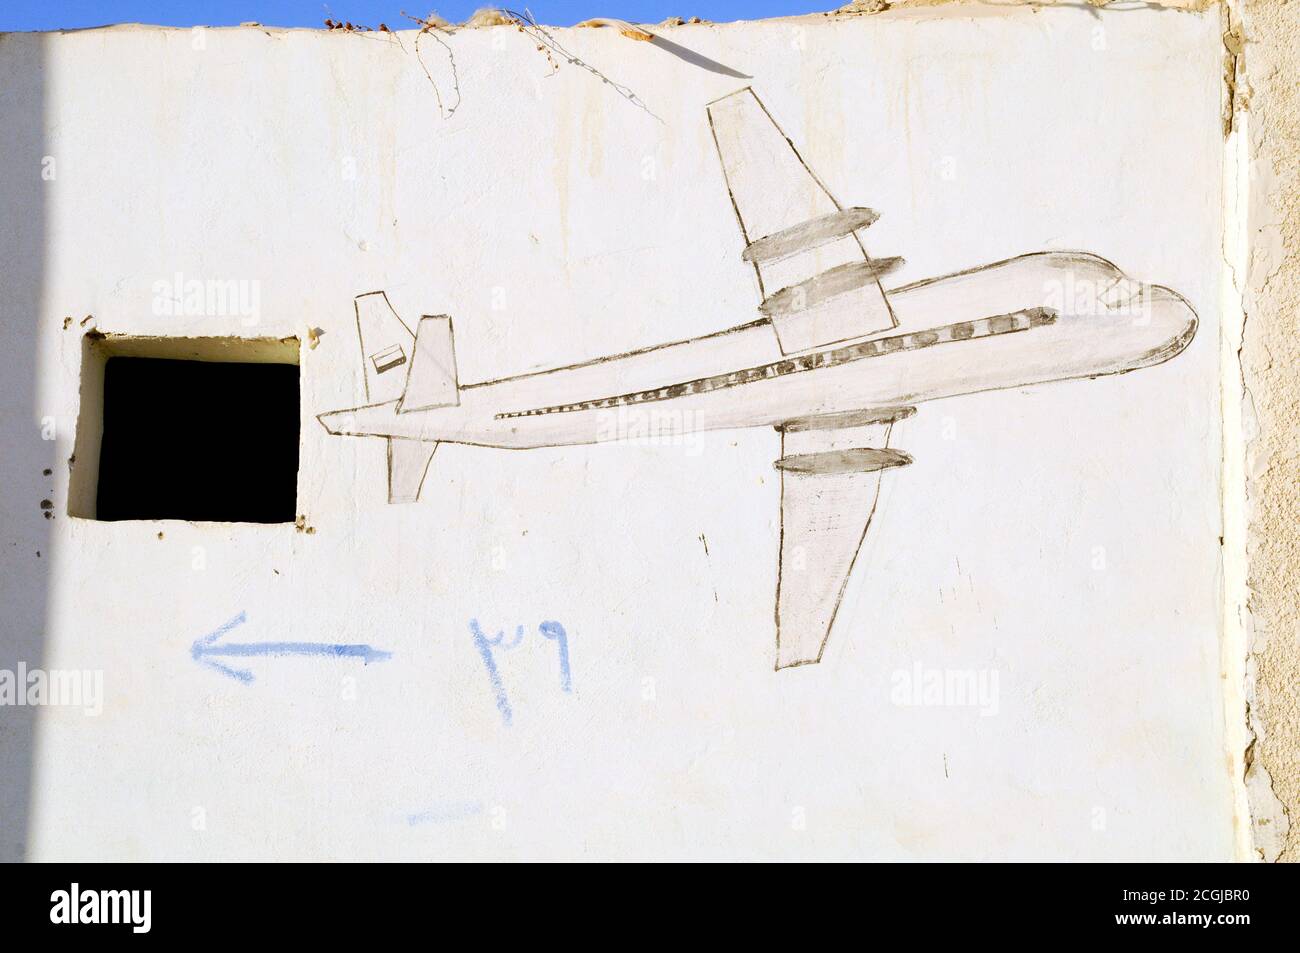 Un graffiti représentant un avion sur un mur dans le village saharien de l'Oasis de Farafra, dans le désert occidental du Sahara, Nouvelle vallée, Égypte. Banque D'Images